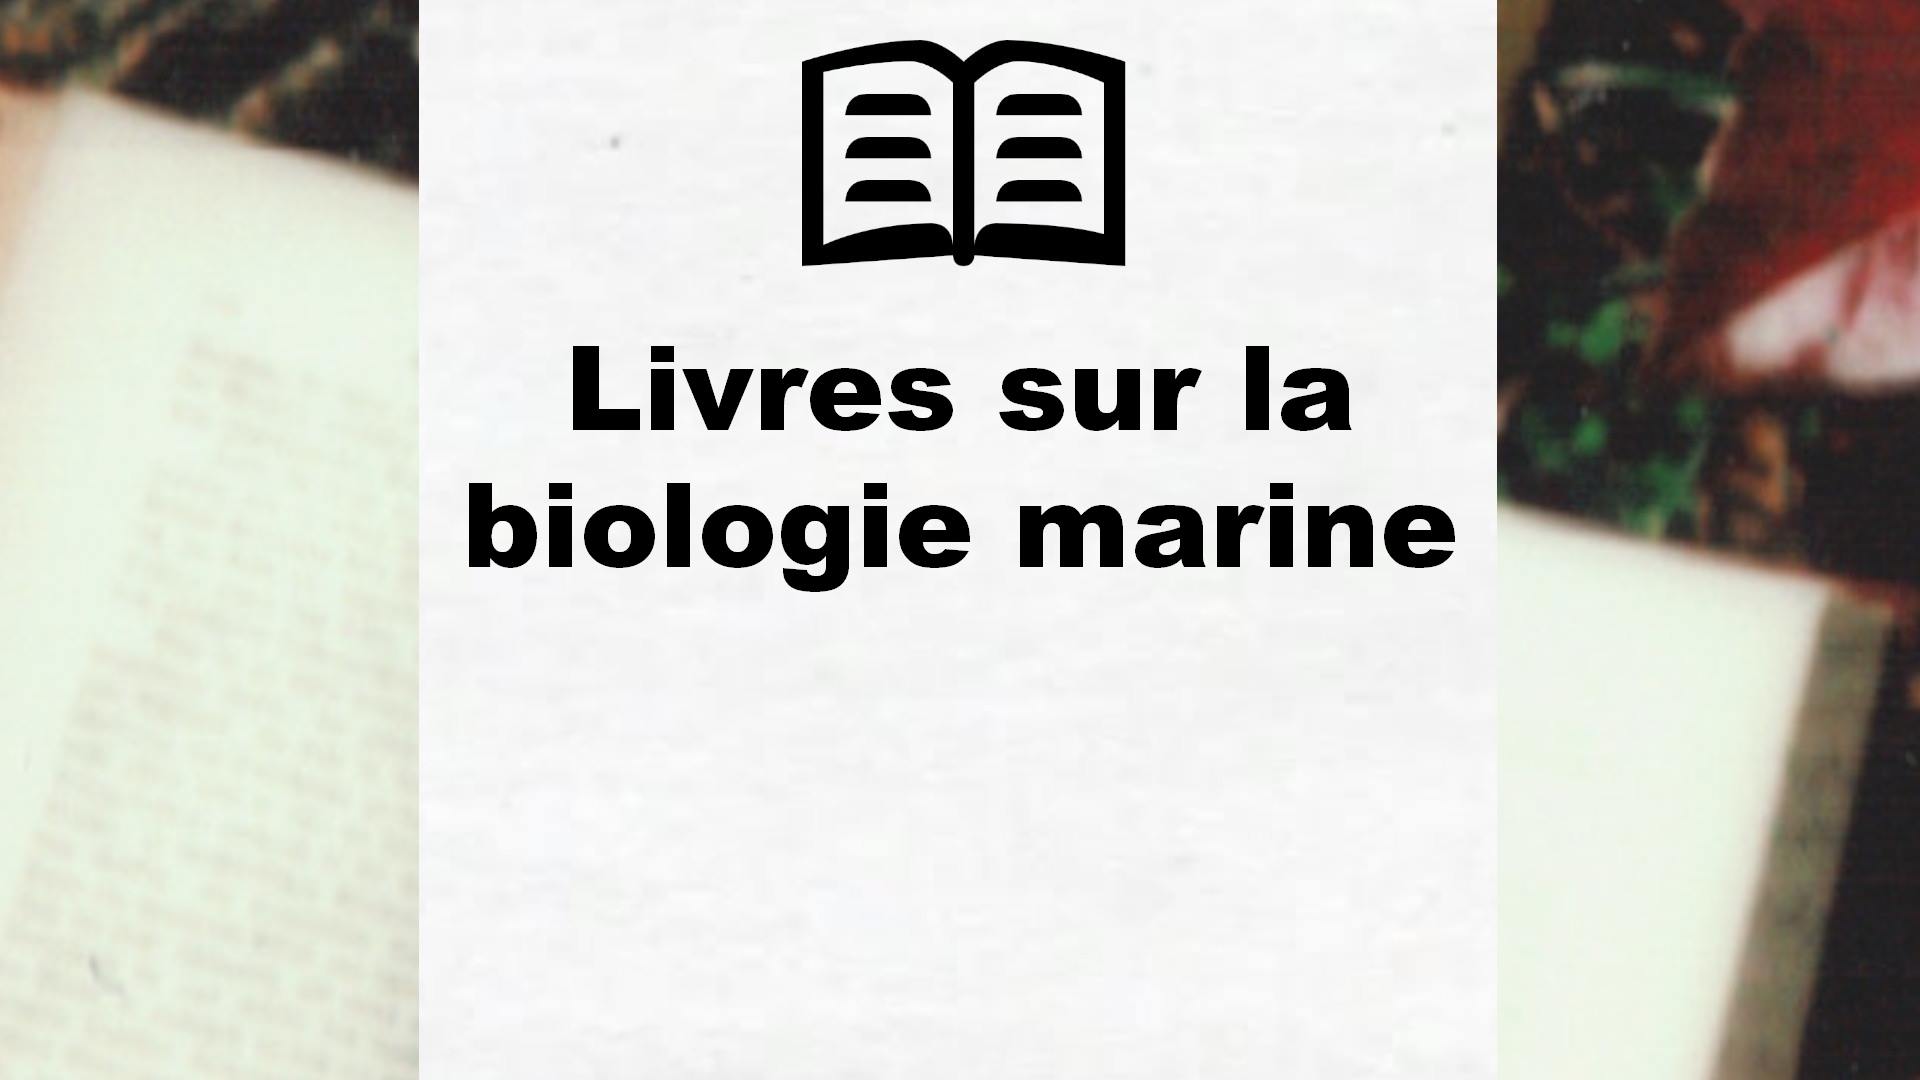 Livres sur la biologie marine